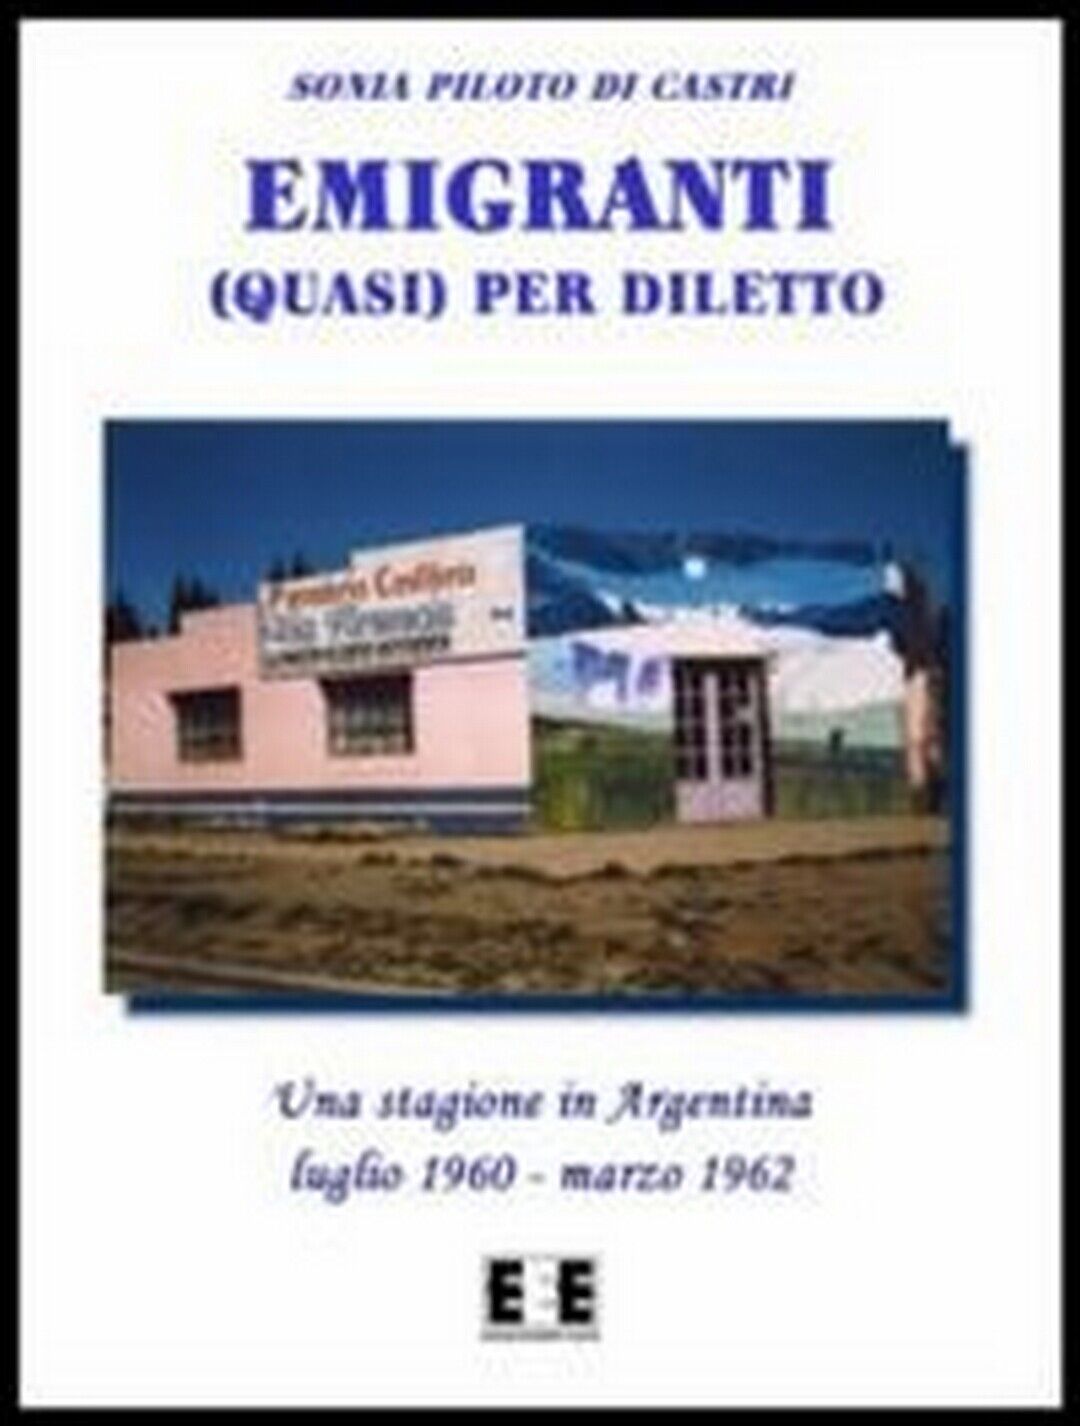 Emigranti (quasi) per diletto  di Sonia Piloto Di Castri,  2013,  Eee-edizioni E